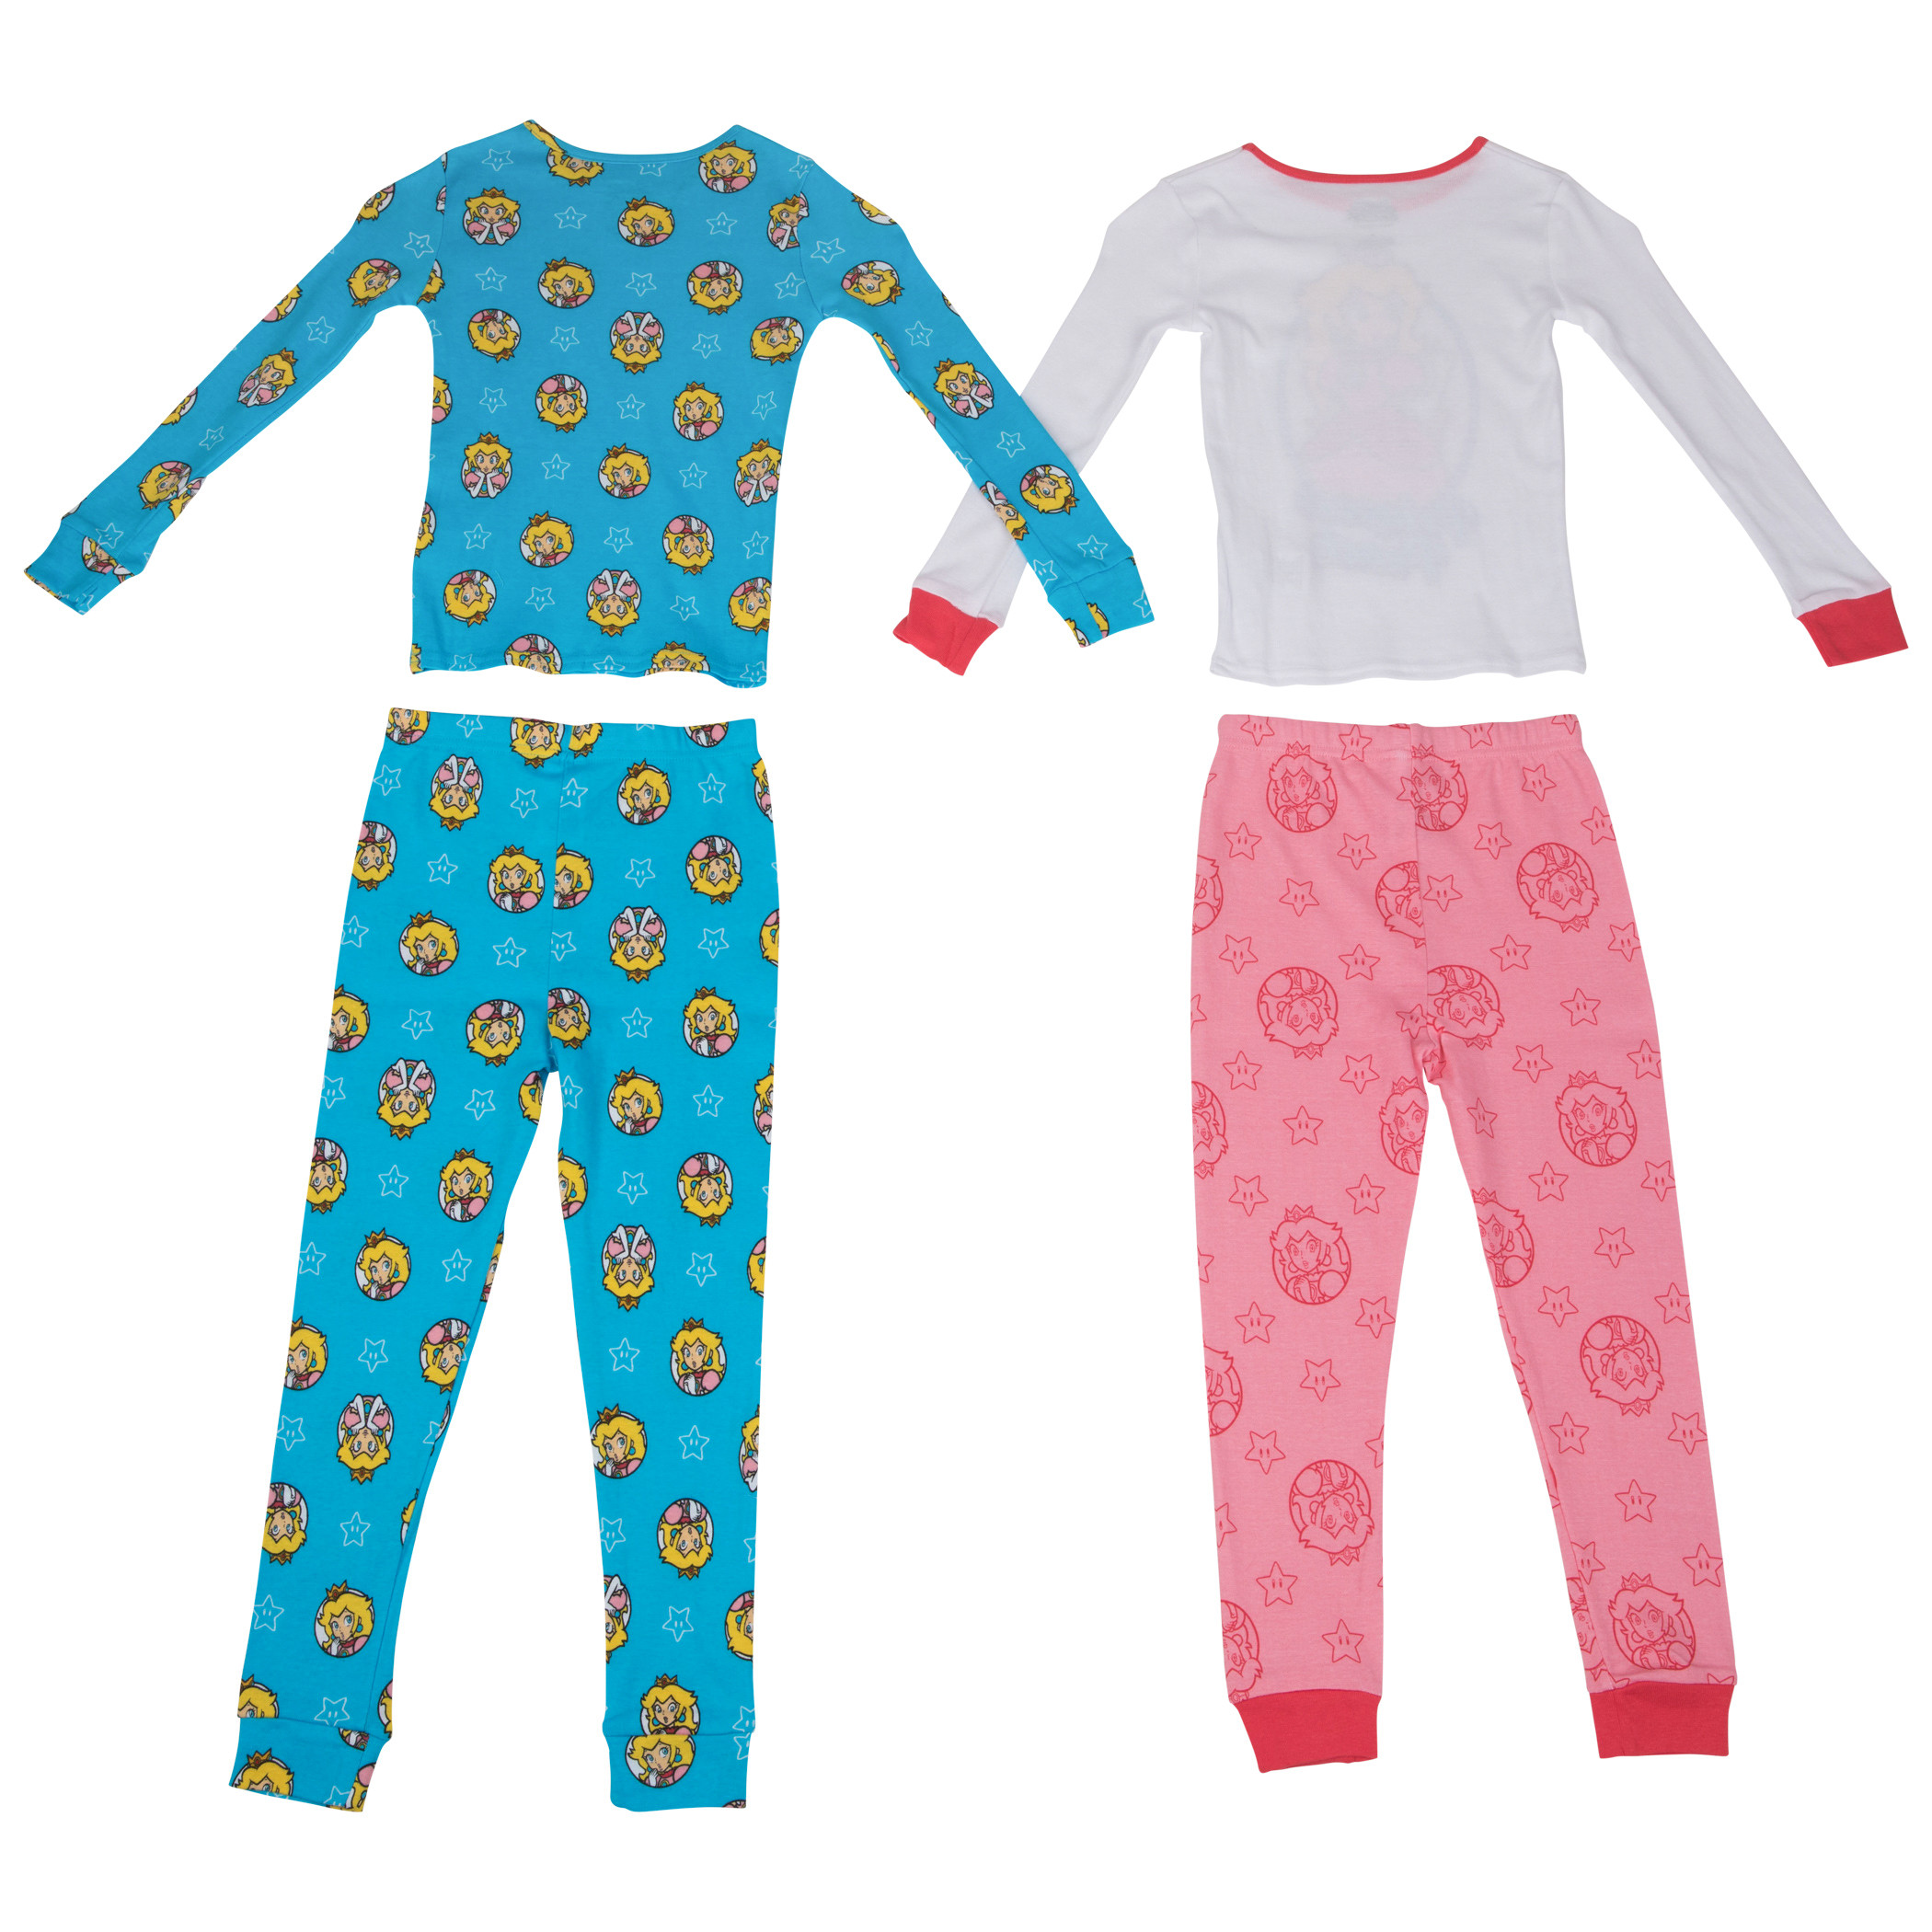 Princess Peach Long Sleeve 4-Piece Girl's Pajama Set